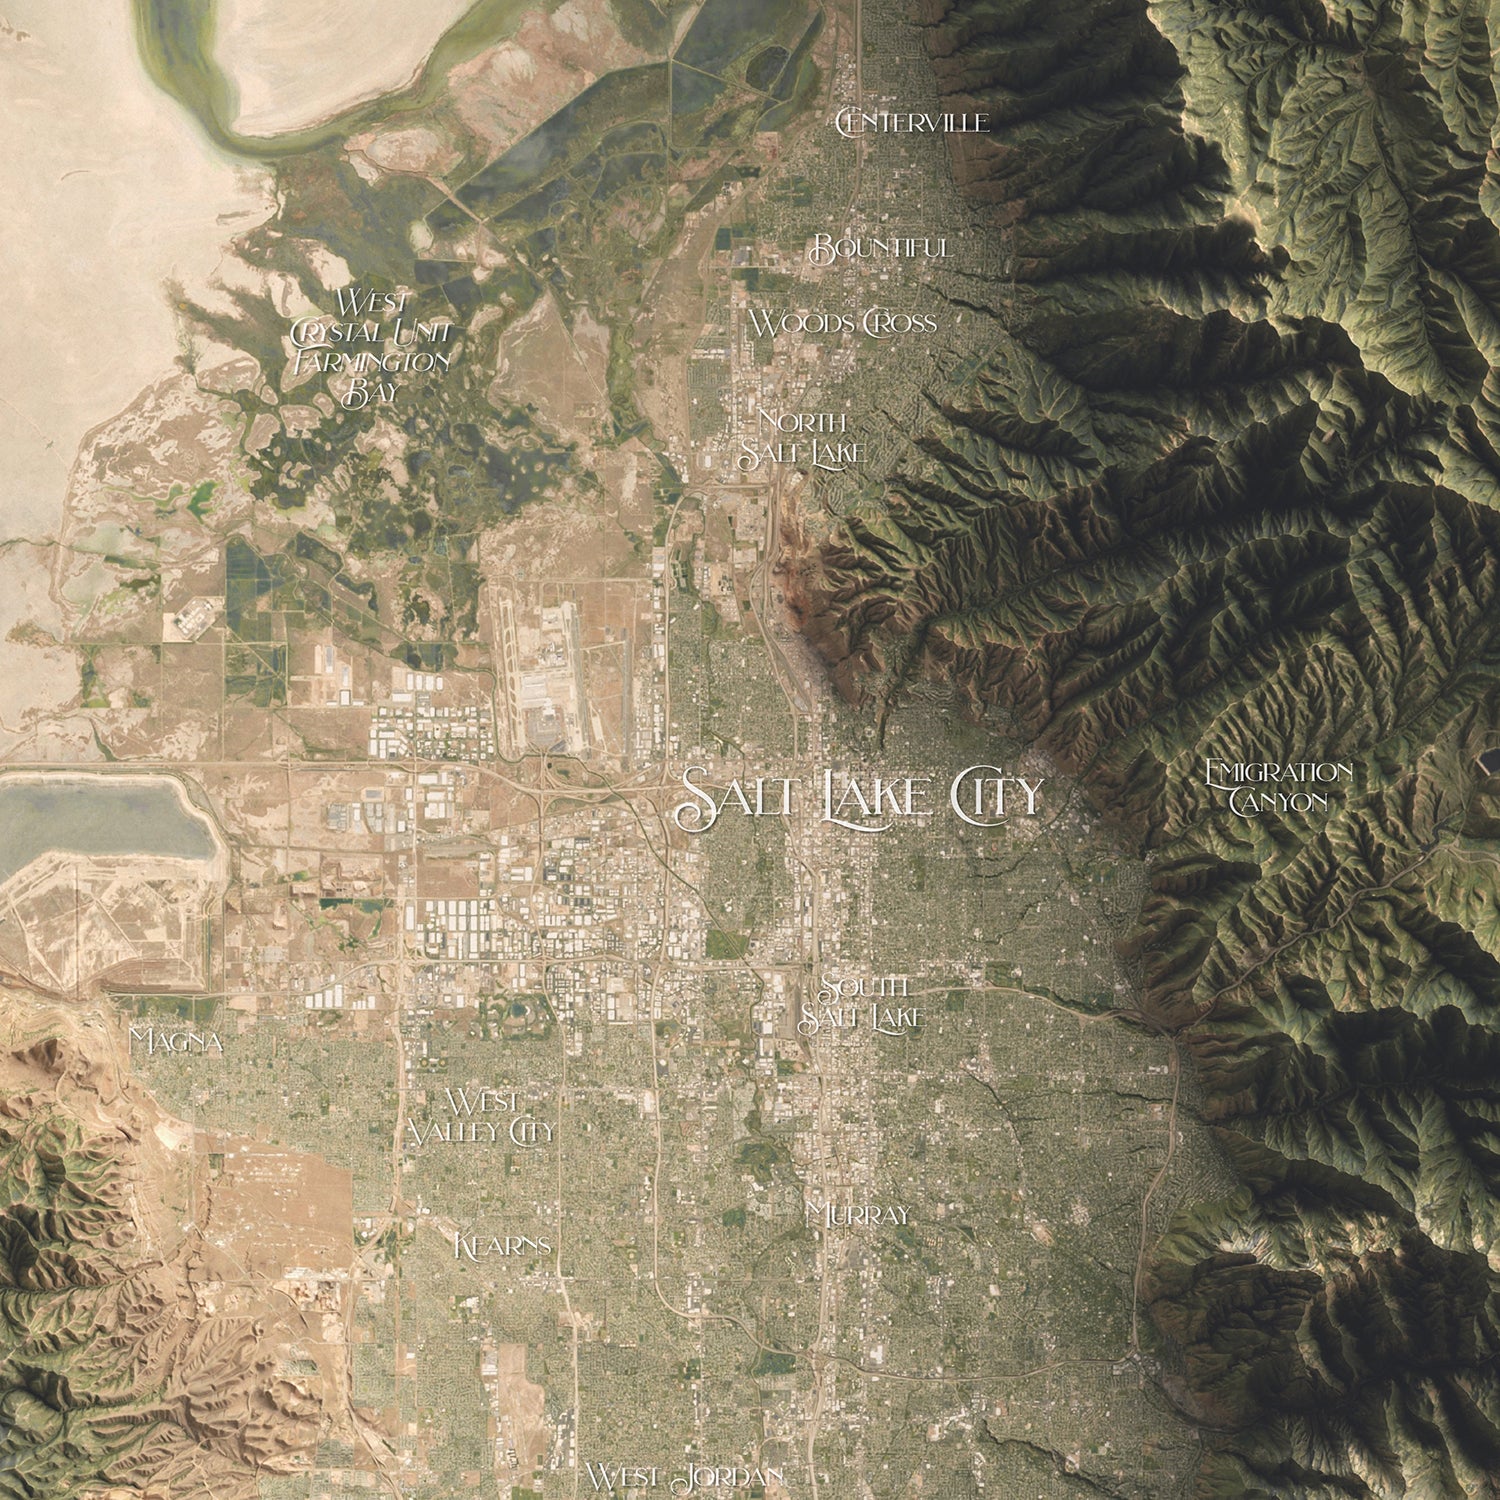 Salt Lake City, Utah Map - The East of Nowhere World Atlas